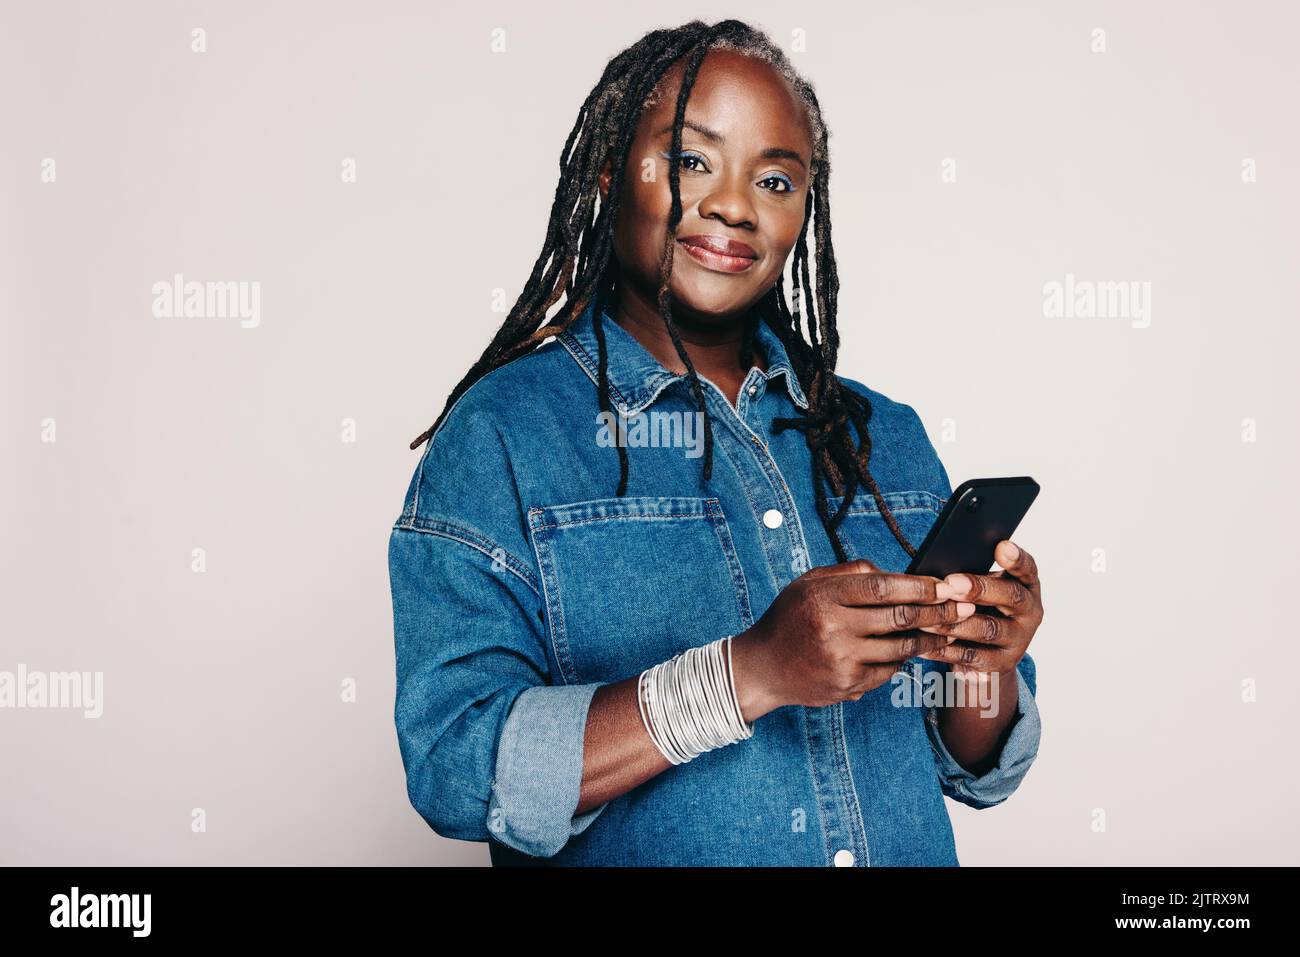 Schöne schwarze Frau, die auf die Kamera schaut, während sie ein Smartphone hält und vor einem grauen Hintergrund steht. Reife Frau mit Dreadlocks trägt ein Stockfoto